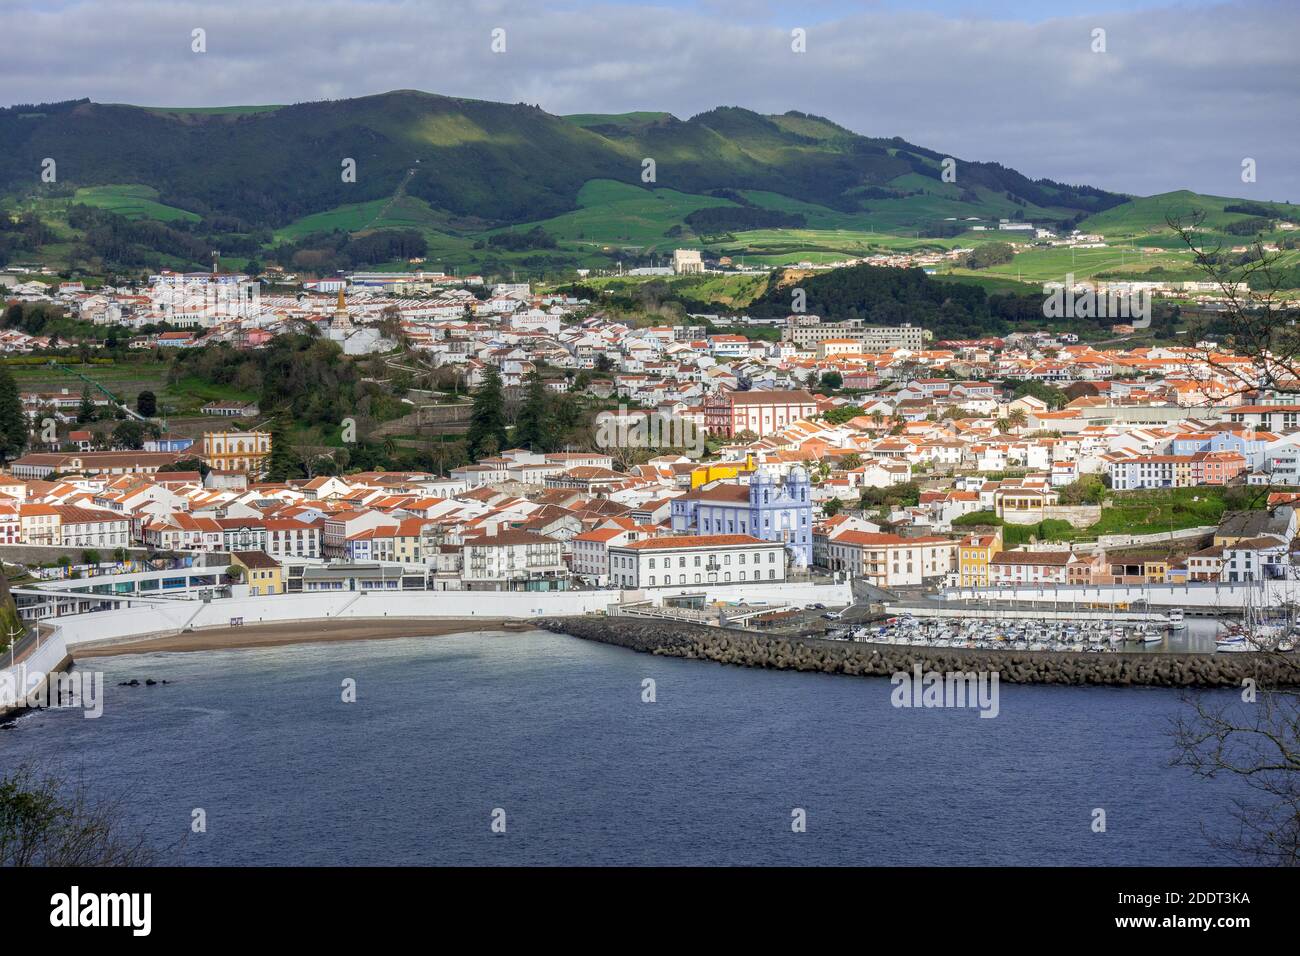 Vista sulla baia di Angra do Heroismo e sul centro città Vista aerea dal vulcano Monte Brasil sull'isola di Terceira Le Azzorre Portogallo Foto Stock